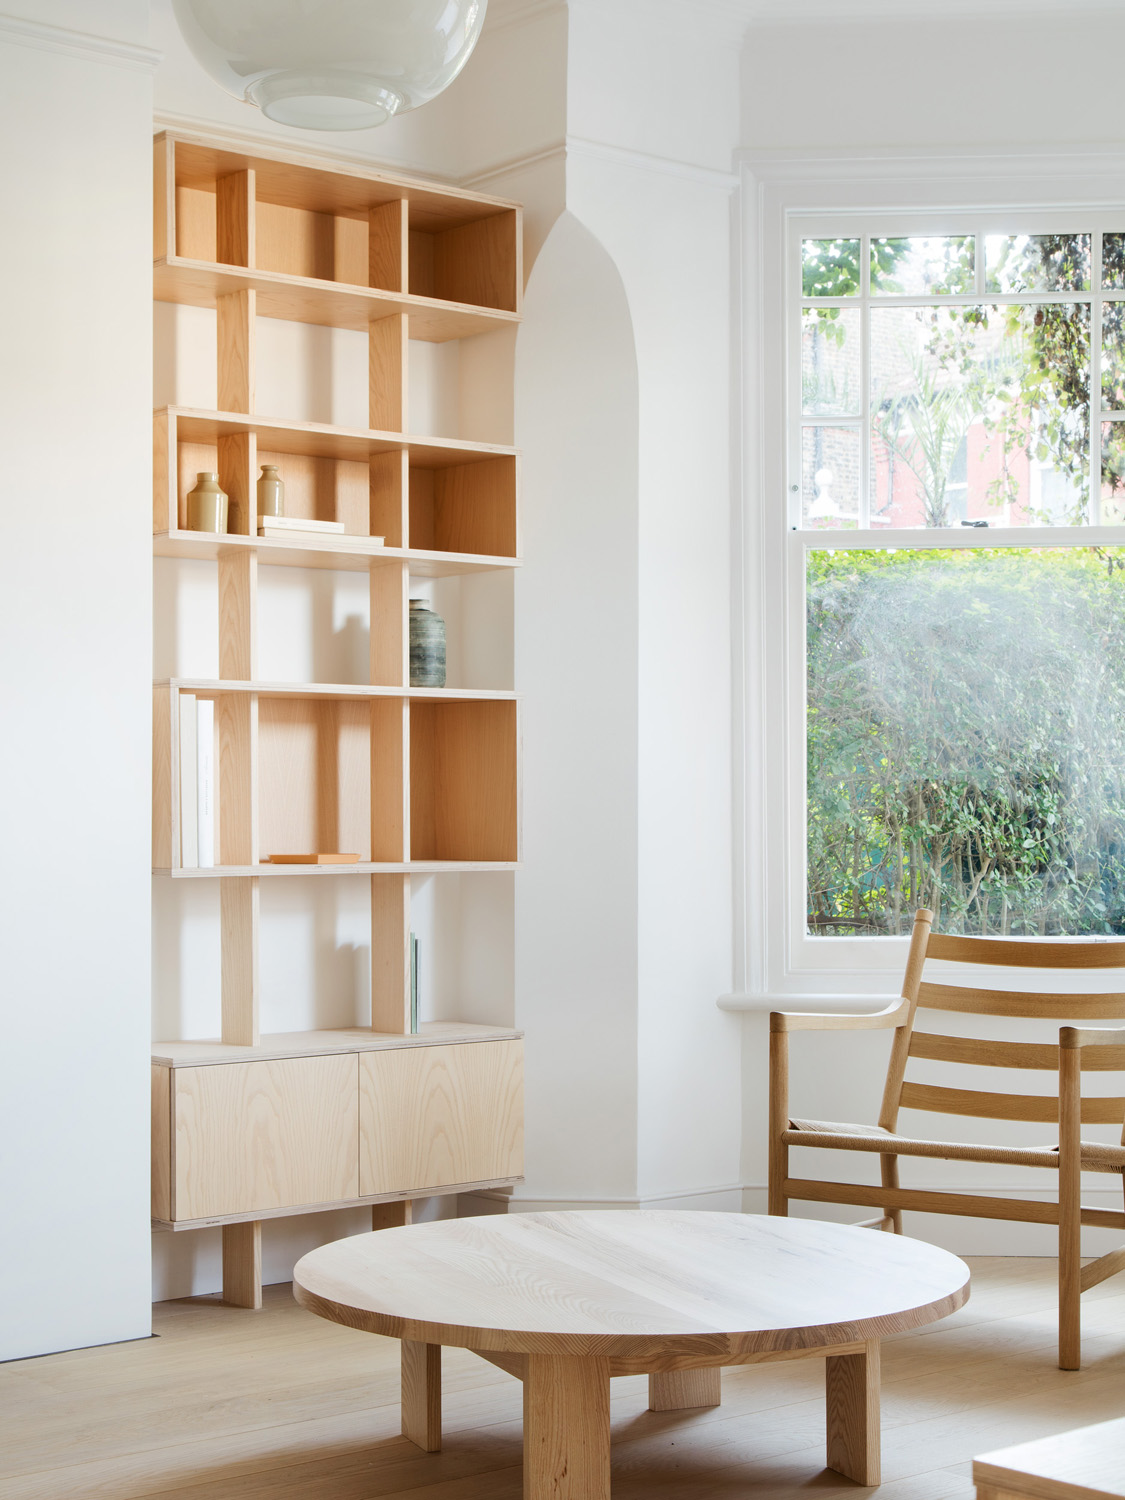 Bookshelf by O&#039;Sullivan Skoufoglou Architects - contemporary architecture and interior design studio in London